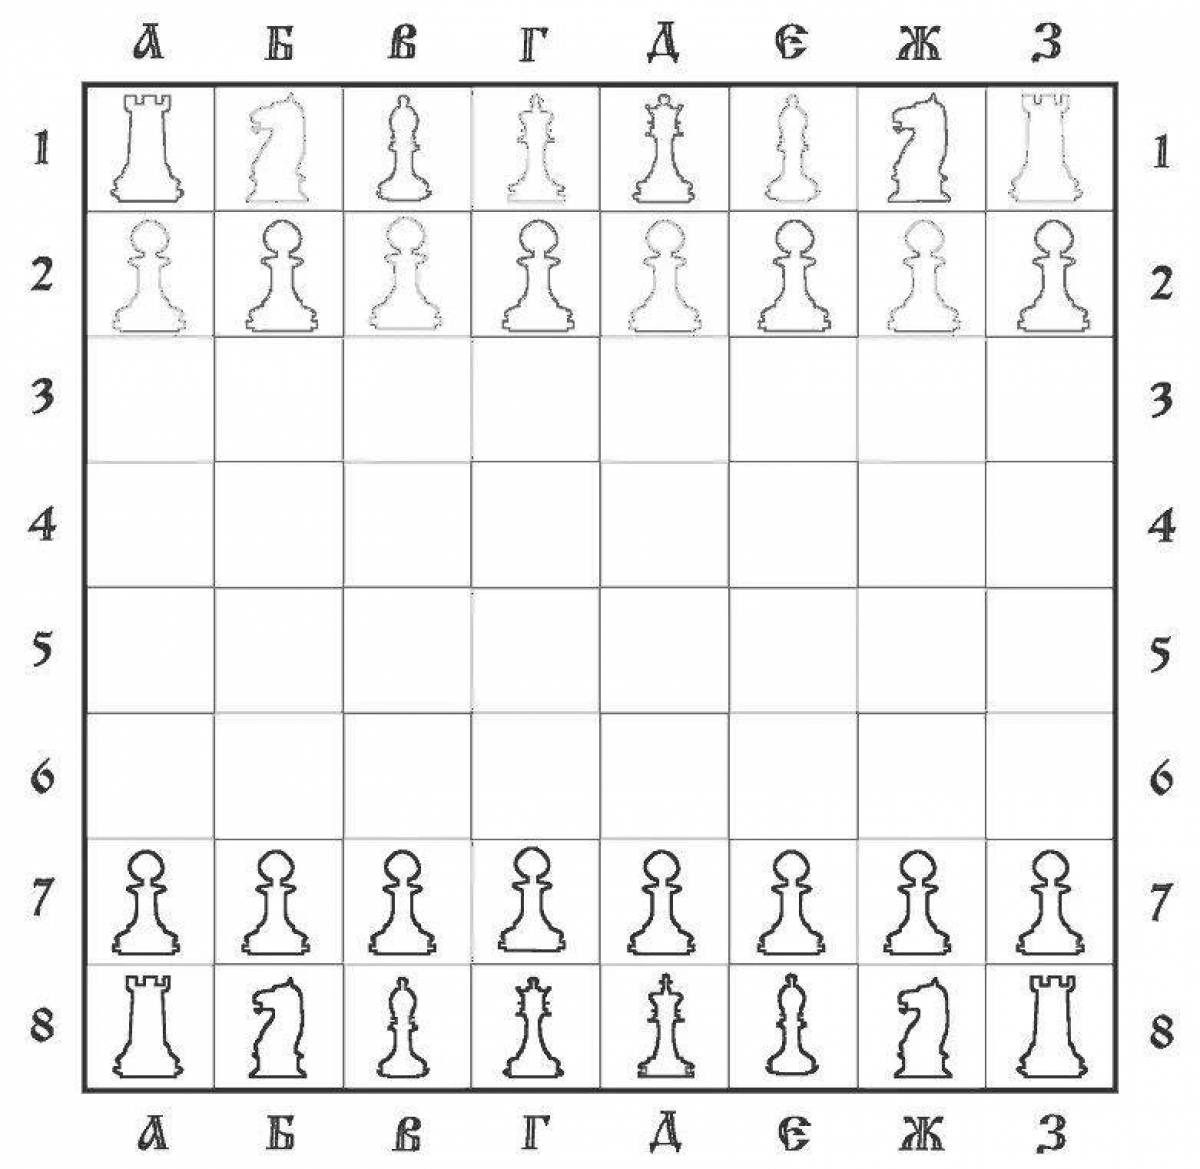 Children's chessboard #5